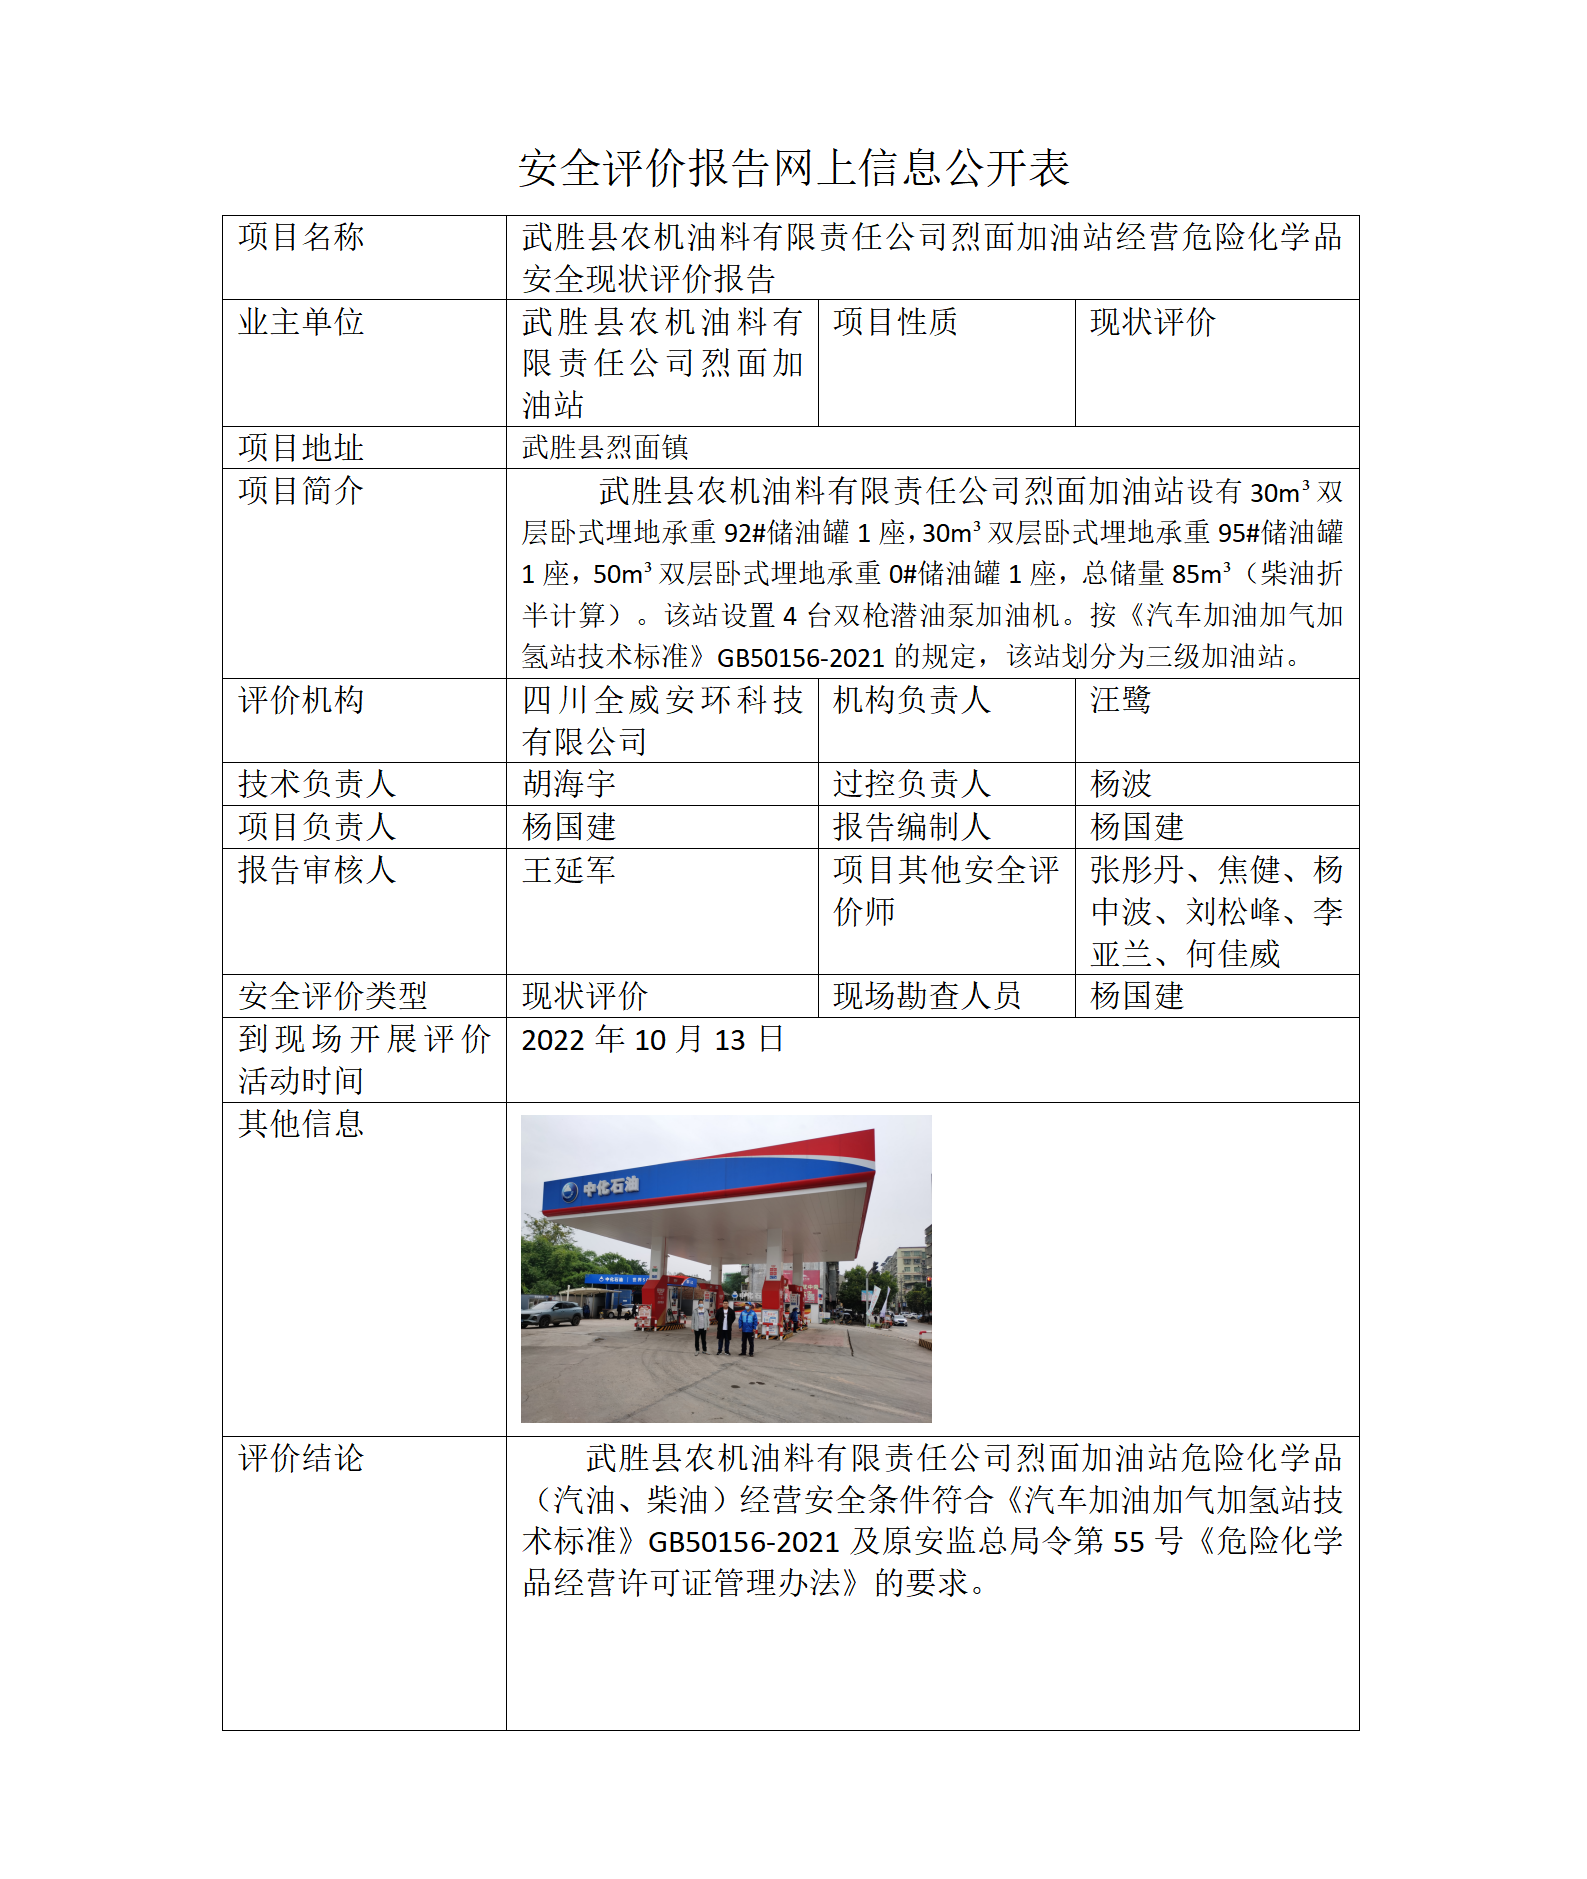 武胜县农机油料有限责任公司烈面加油站经营危险化学品安全现状评价